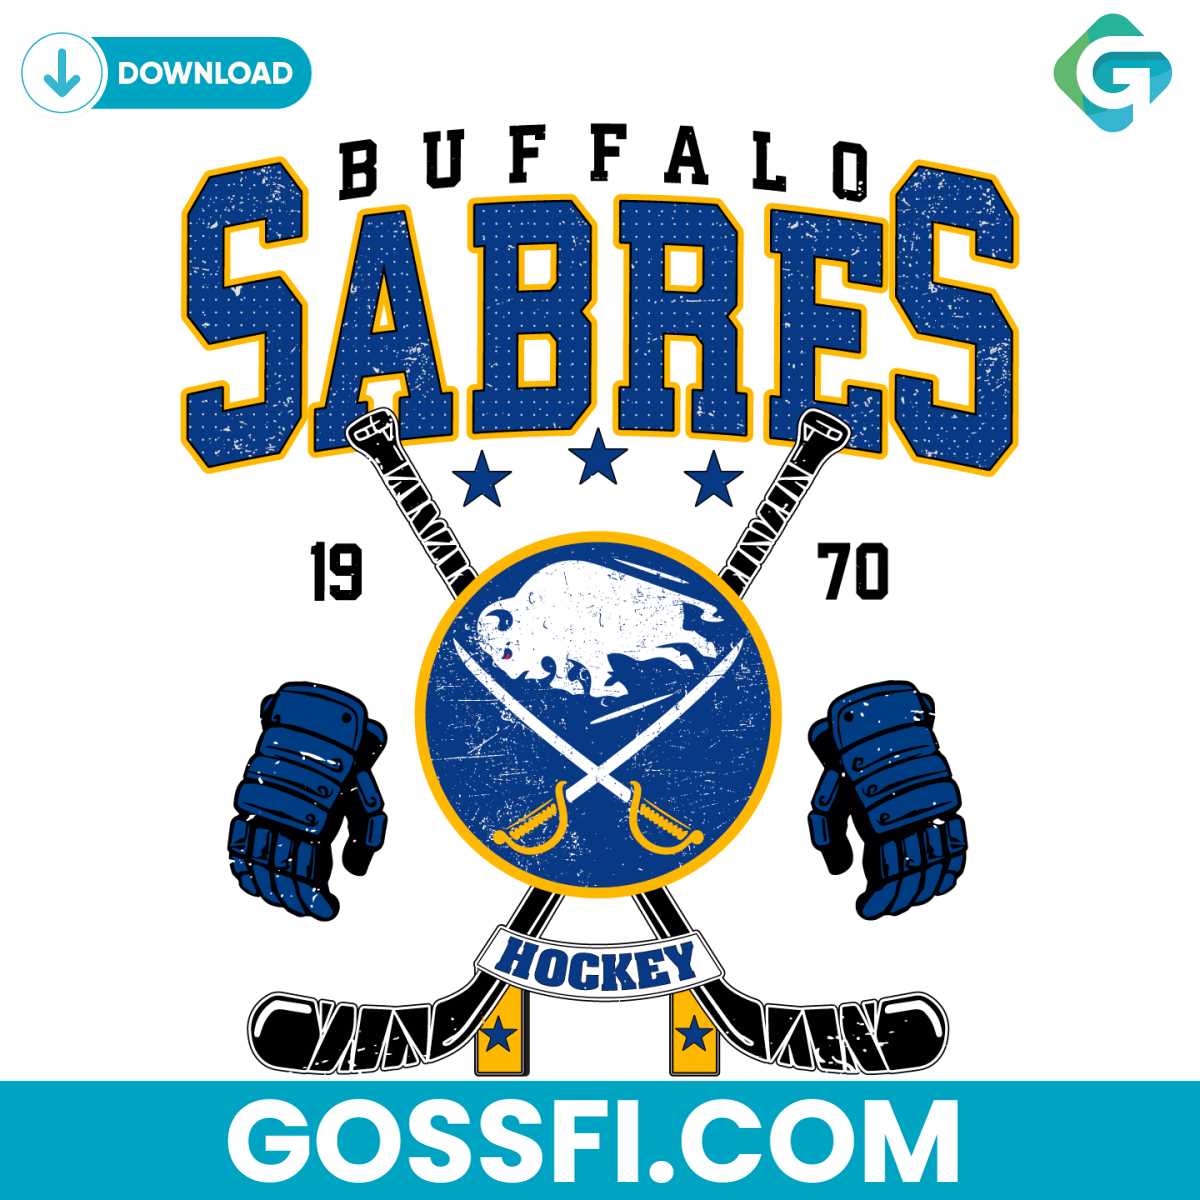 vintage-buffalo-sabres-hockey-svg-digital-download